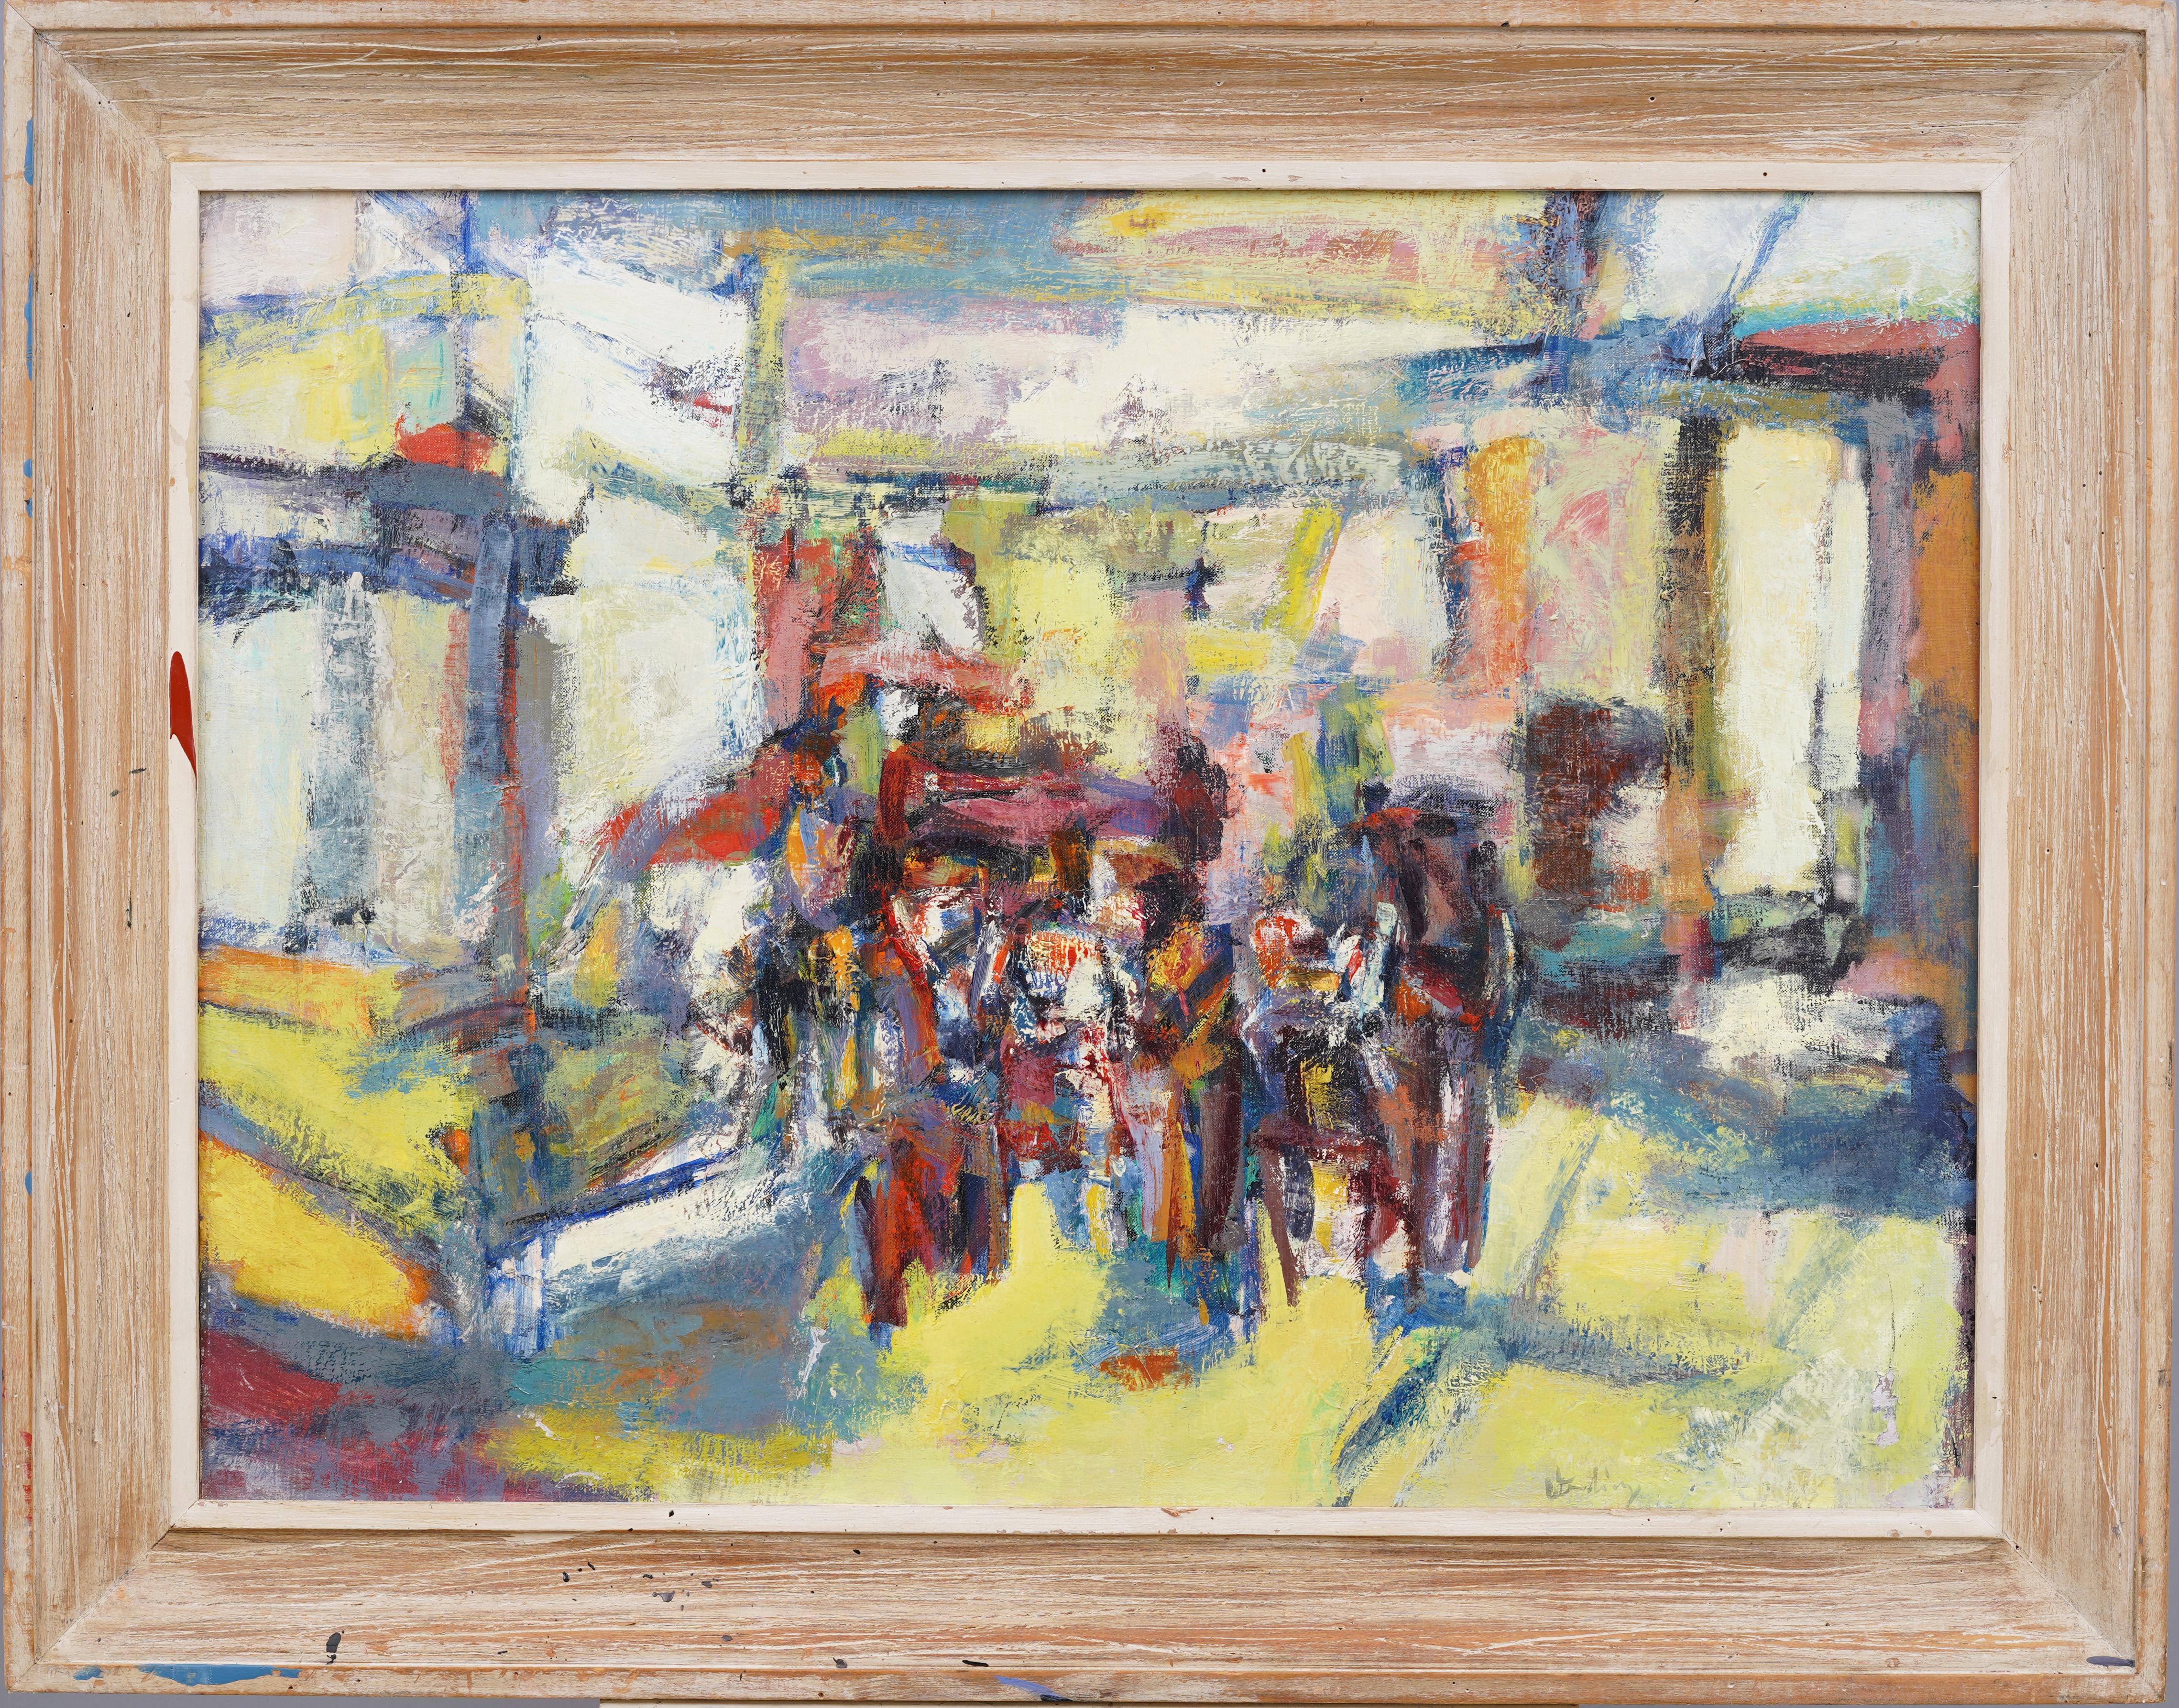 Erwin Wending  Landscape Painting – Exhibitierte gerahmte modernistische Straßenszene, signiertes Gemälde, abstrakt-expressionistischer Expressionismus